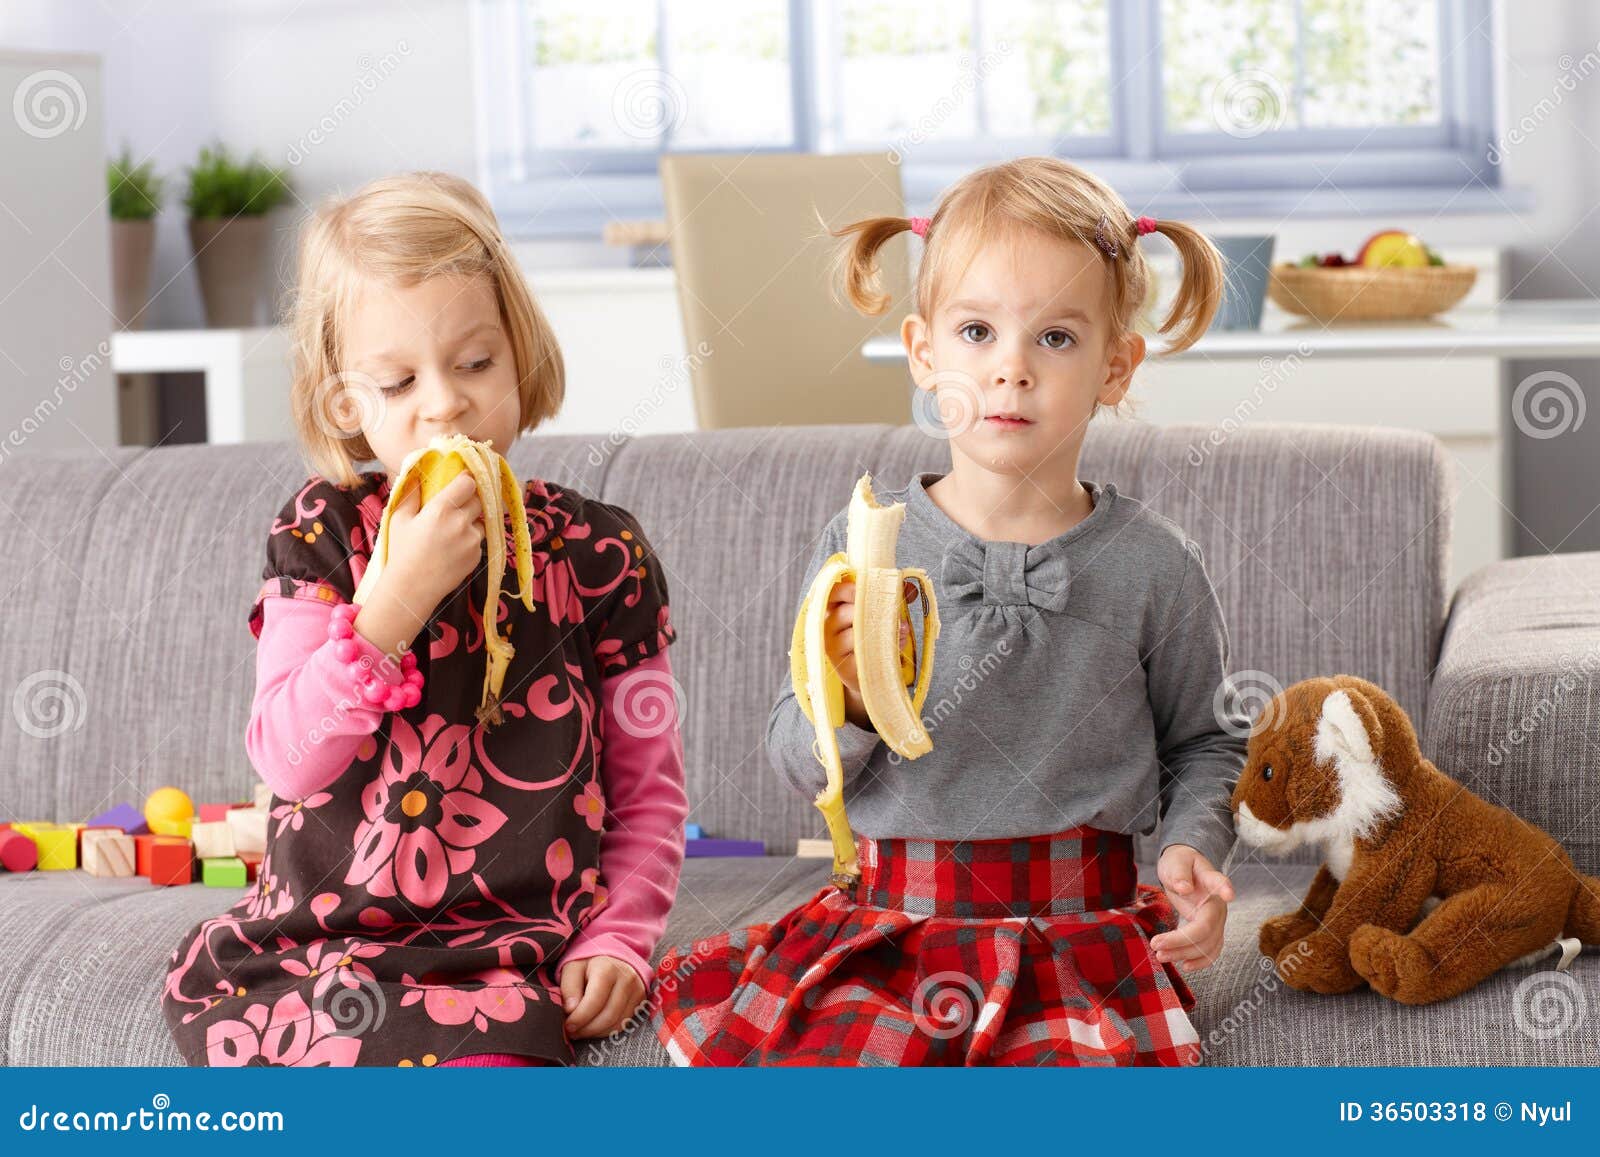 吃香蕉的孩子 库存图片. 图片 包括有 健康, 黄色, 楼梯栏杆, 鲜美, 饮食, 查出, 孩子, 背包 - 84529497